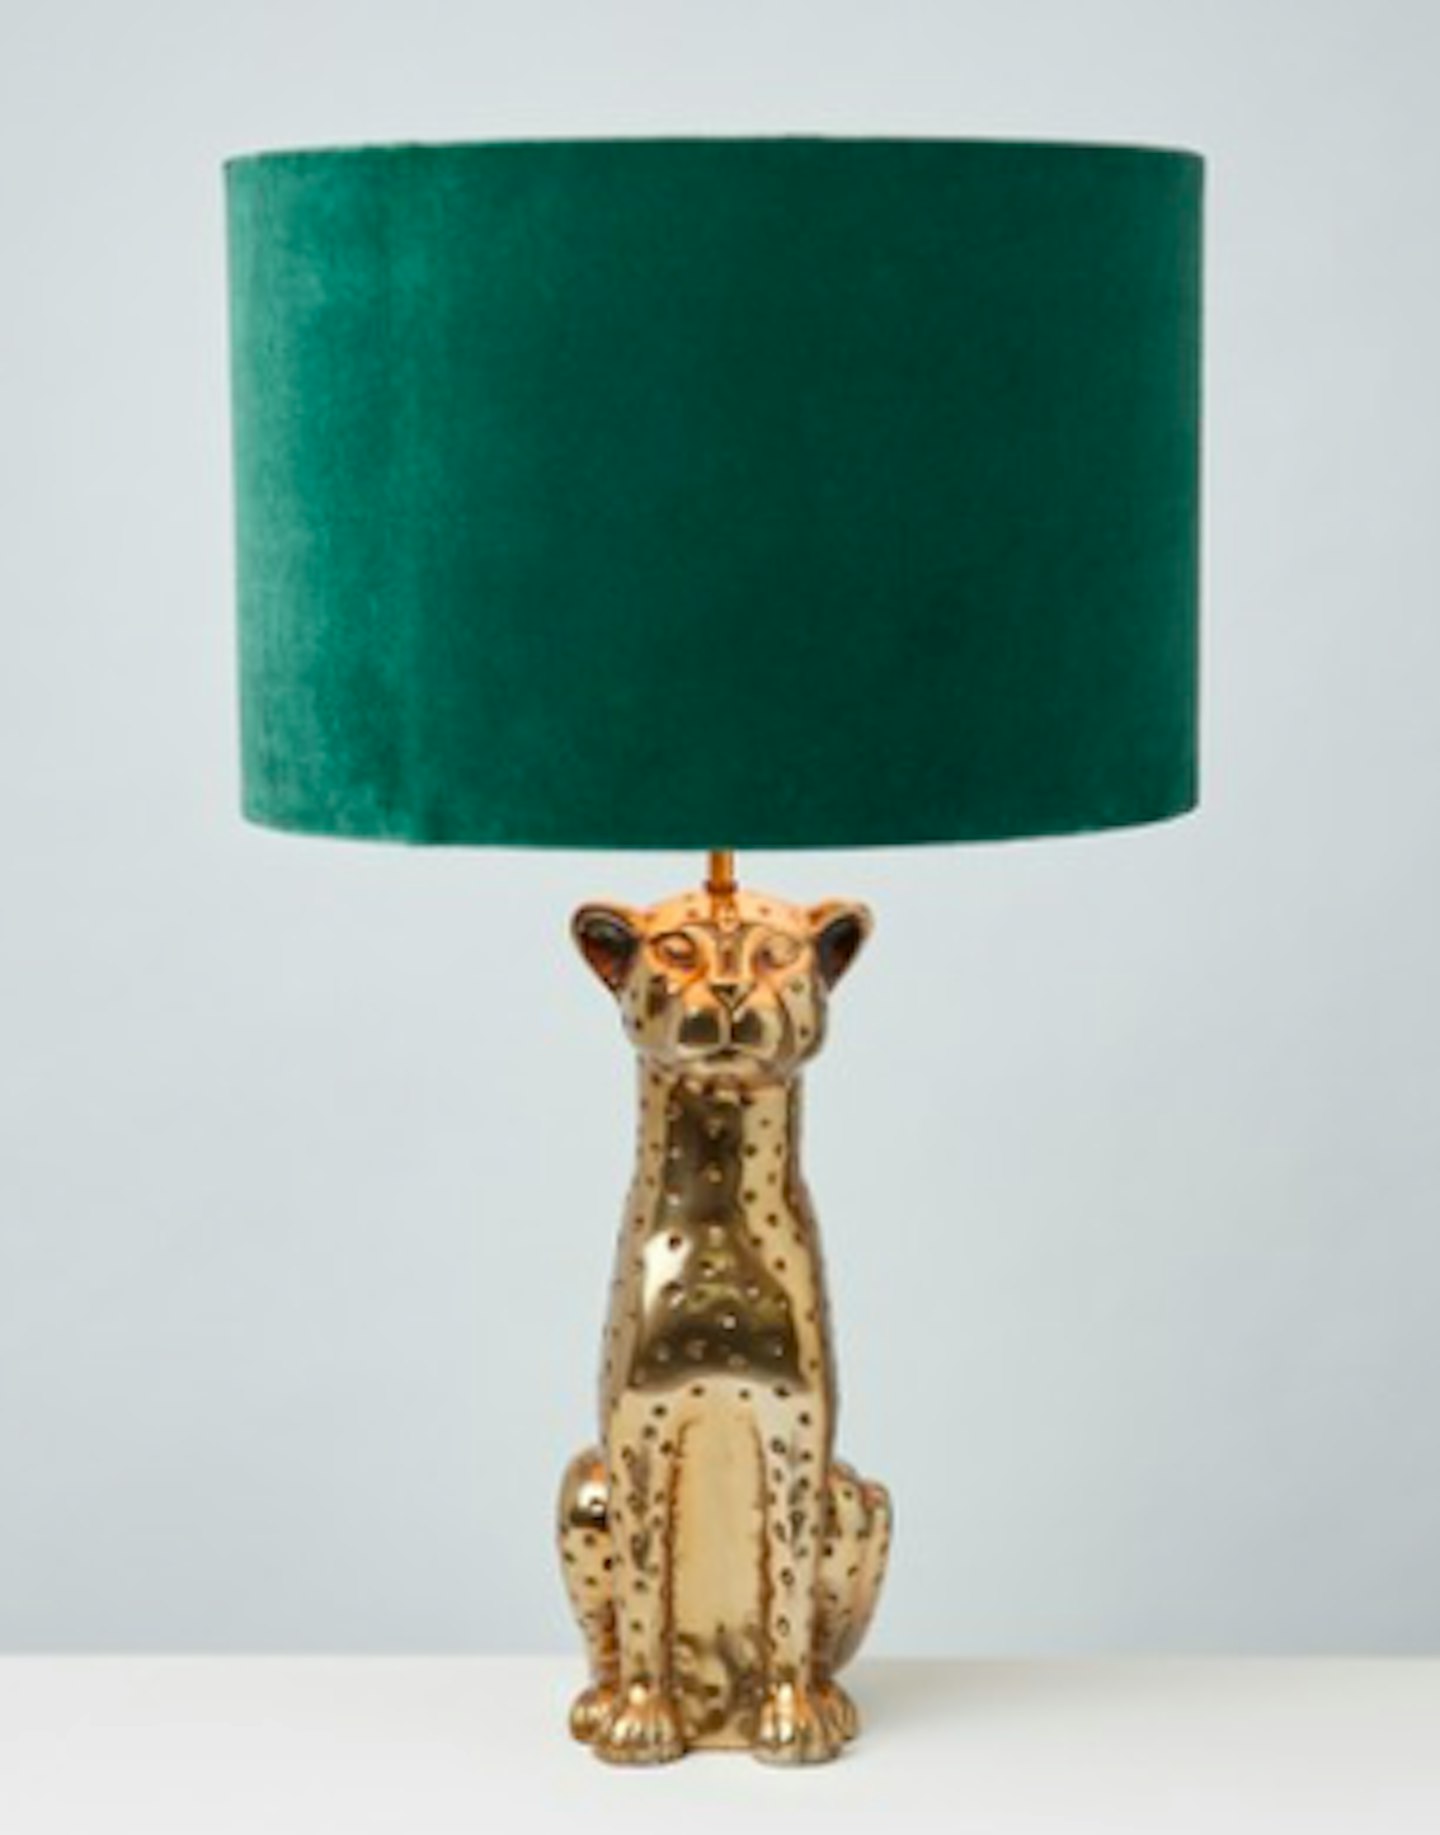 Oliver Bonas, Leopard Green Velvet Shade Desk & Table Lamp, £135